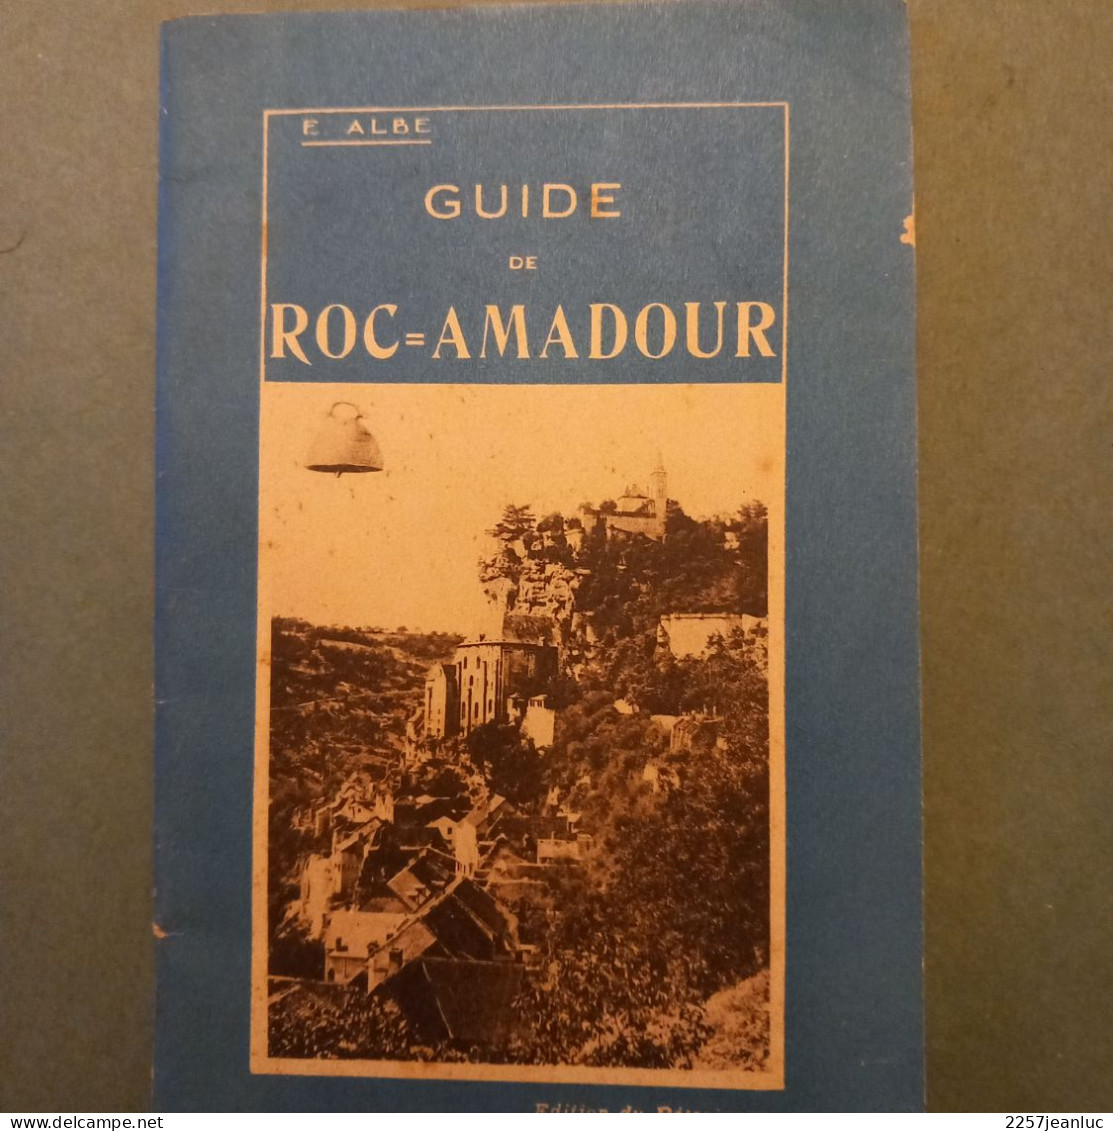 Guide De Roc Amadour E ALBE 1931 De 40 Pages - Michelin (guides)